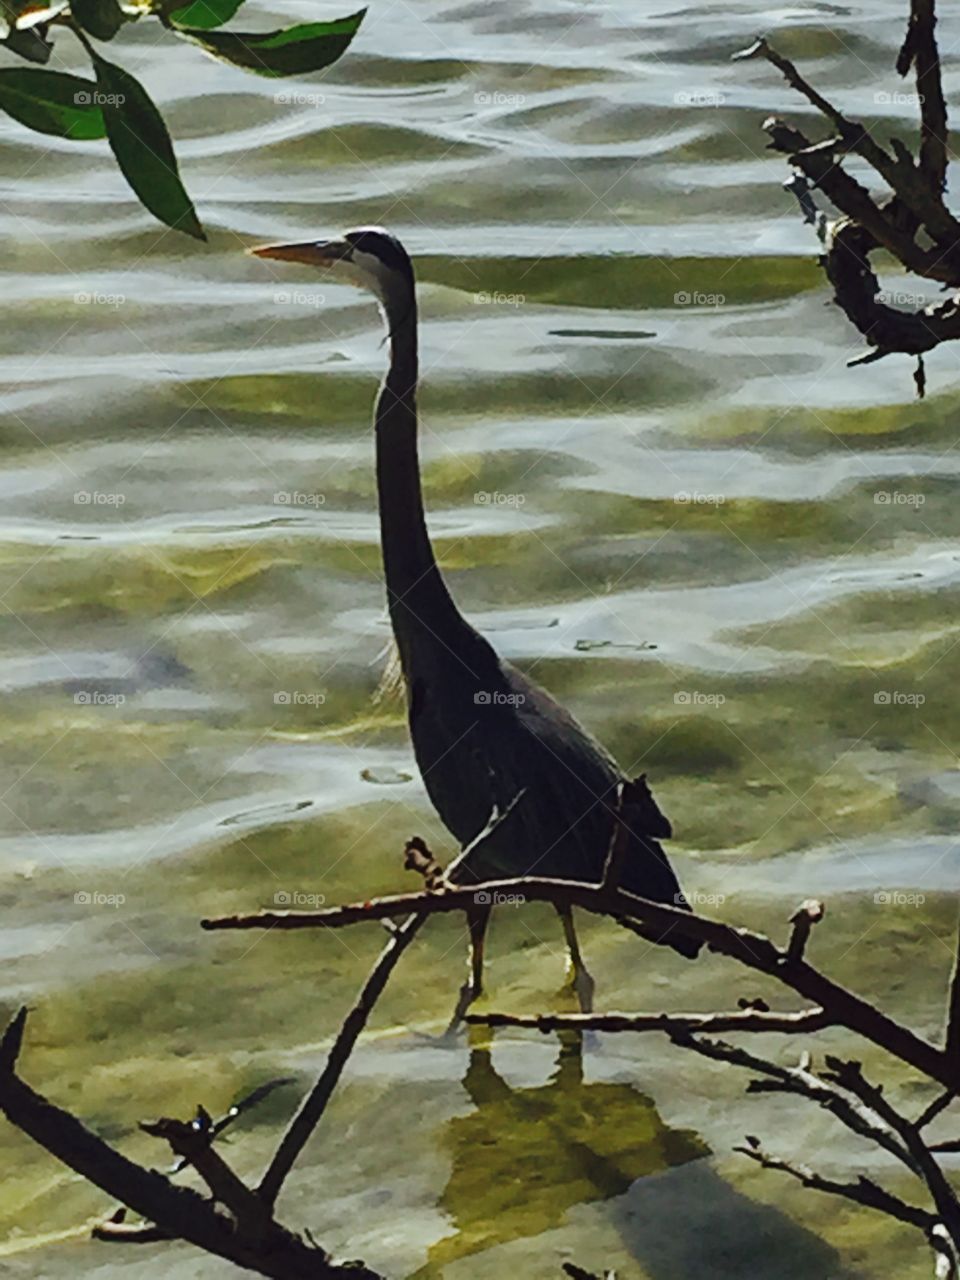 Florida bird at beach